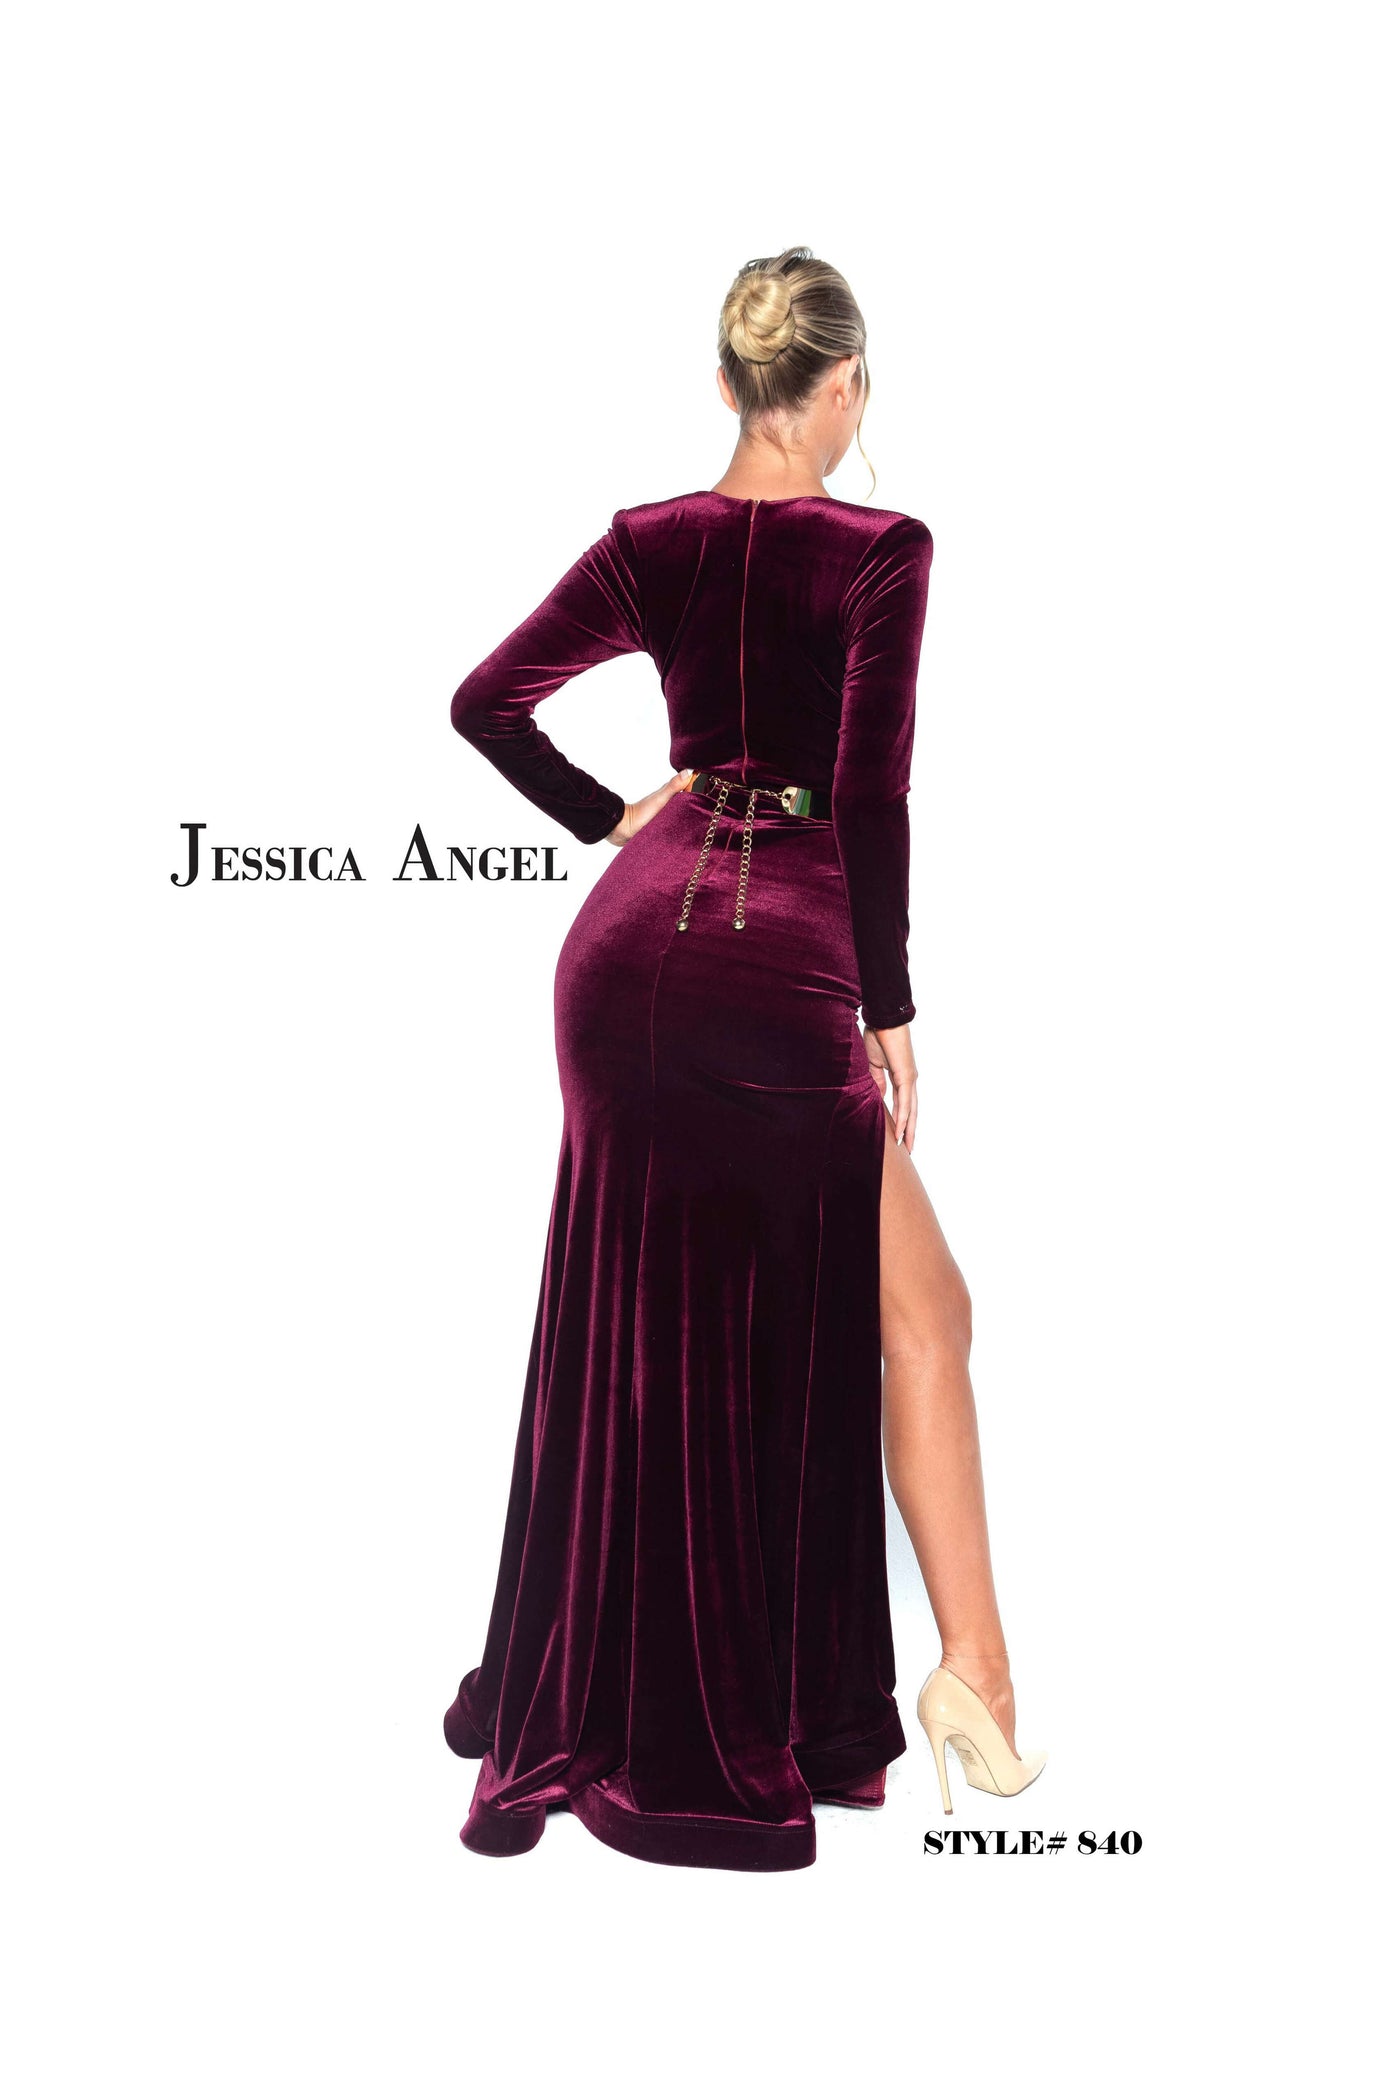 Jessica Angel 840